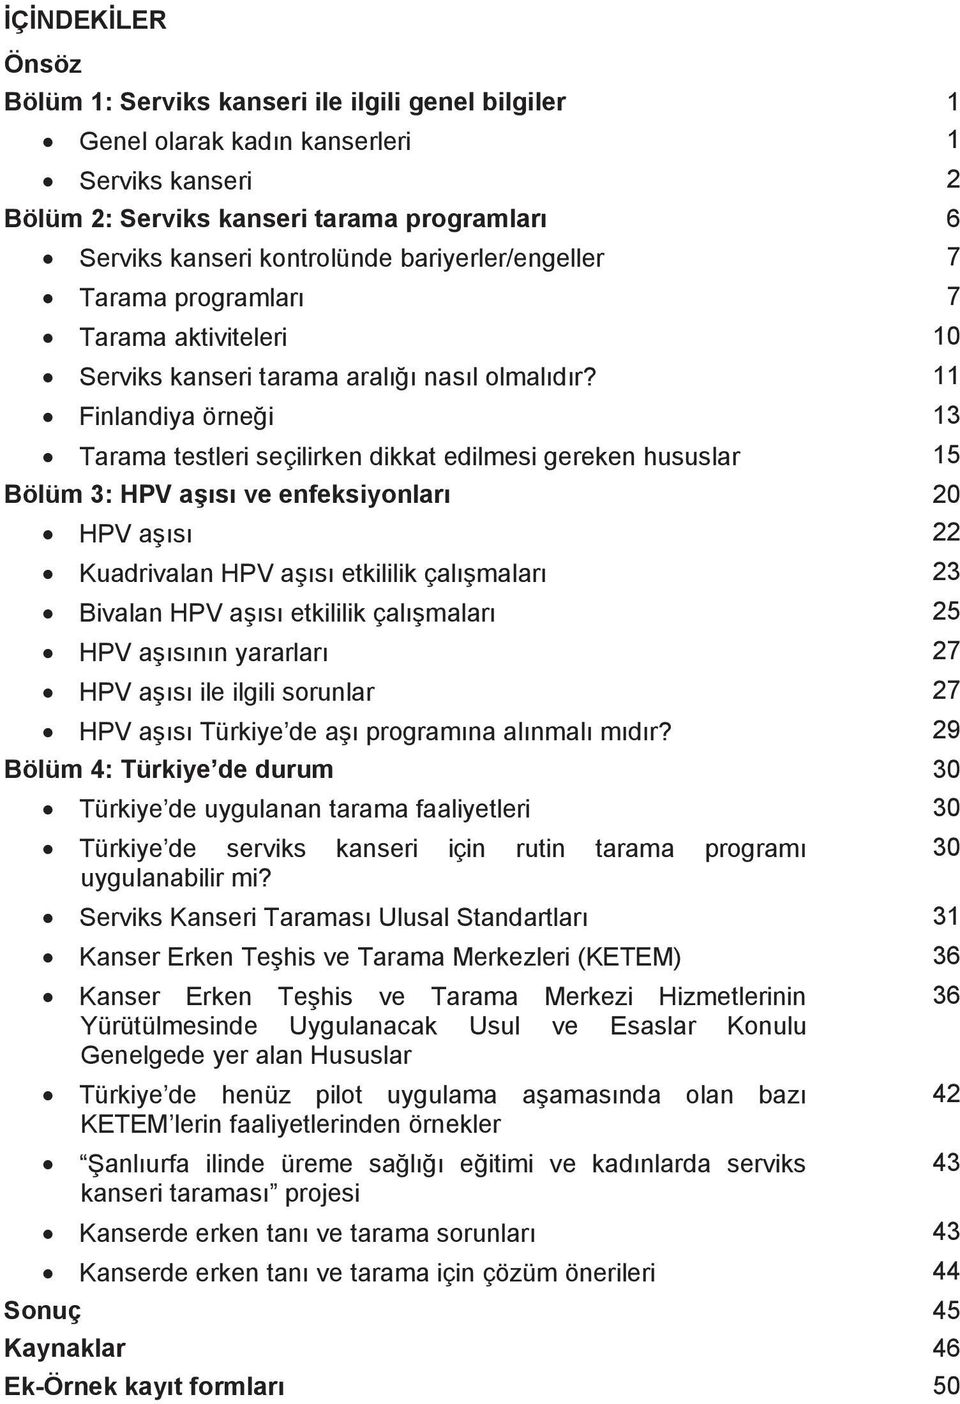 11 Finlandiya örnei 13 Tarama testleri seçilirken dikkat edilmesi gereken hususlar 15 Bölüm 3: HPV as ve enfeksiyonlar 20 HPV as 22 Kuadrivalan HPV as etkililik çalmalar 23 Bivalan HPV as etkililik